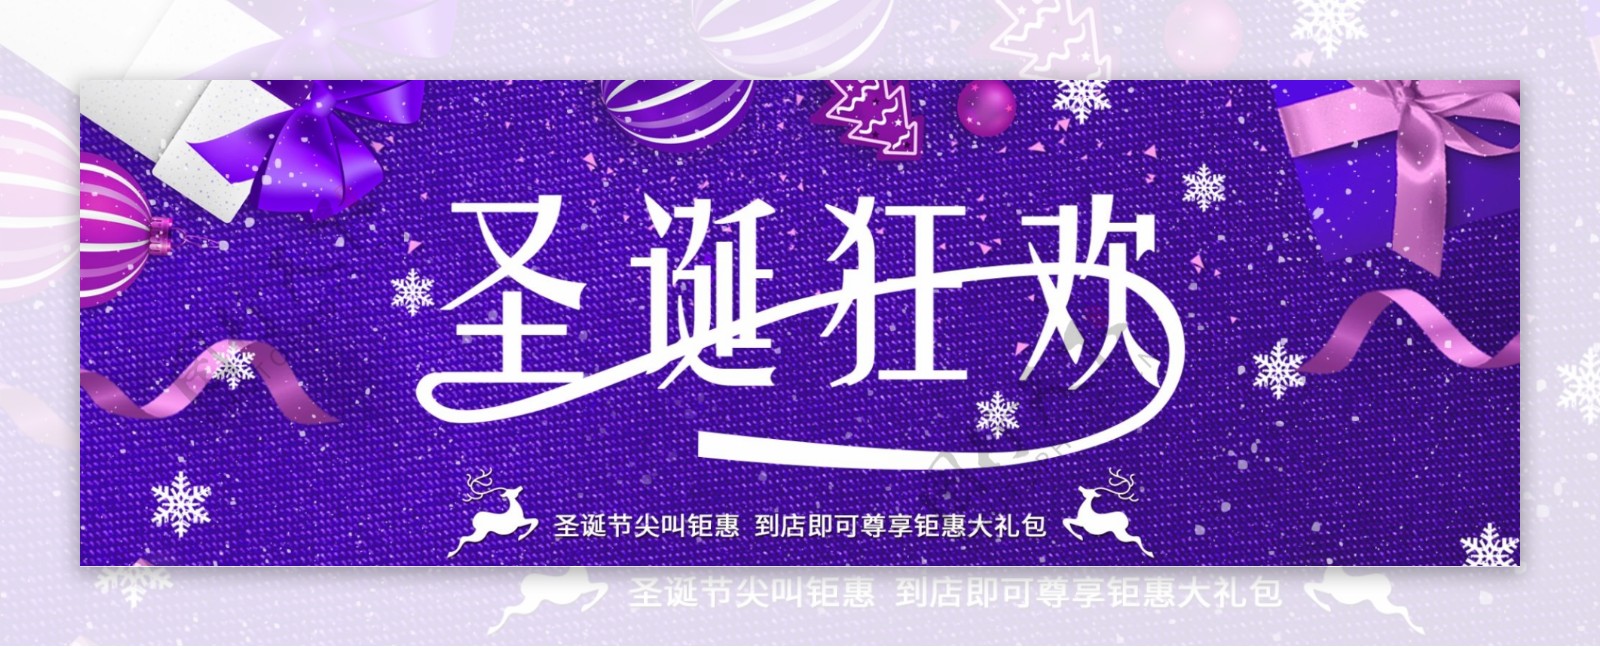 红色喜庆礼盒圣诞狂欢淘宝促销banner